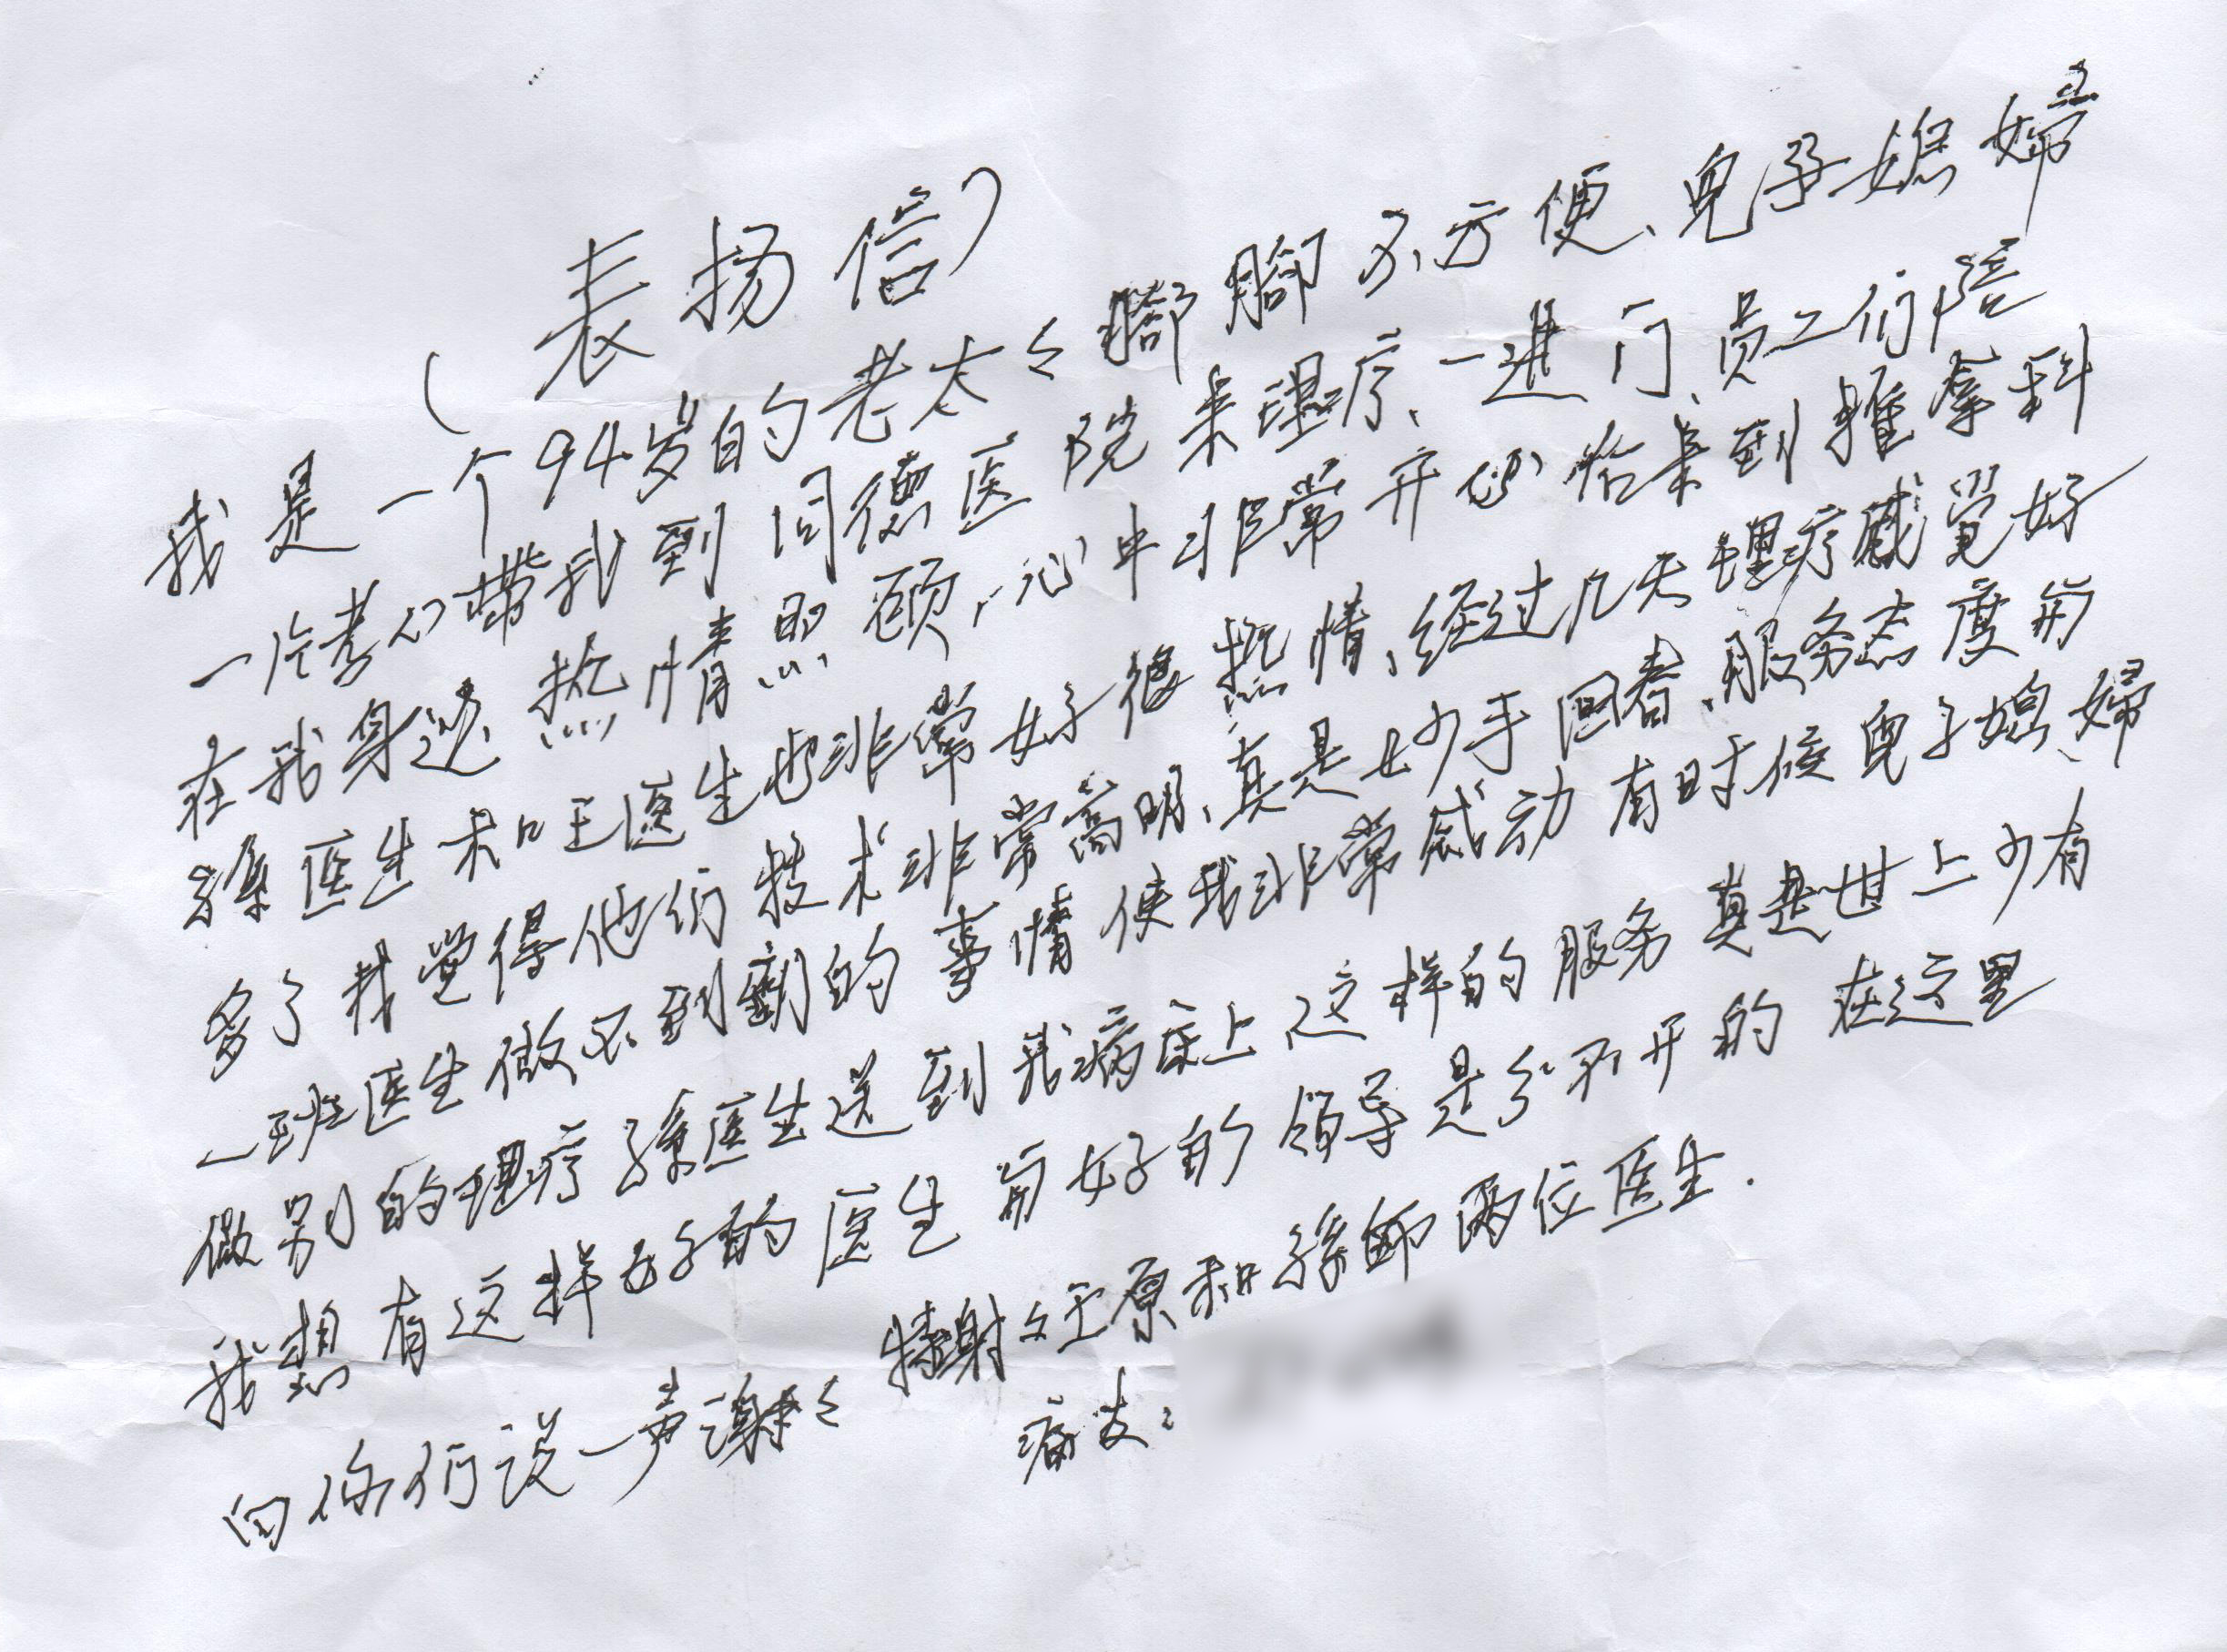 纸笺传心意 暖意透仁心——一封来自九旬老人的亲笔感谢信